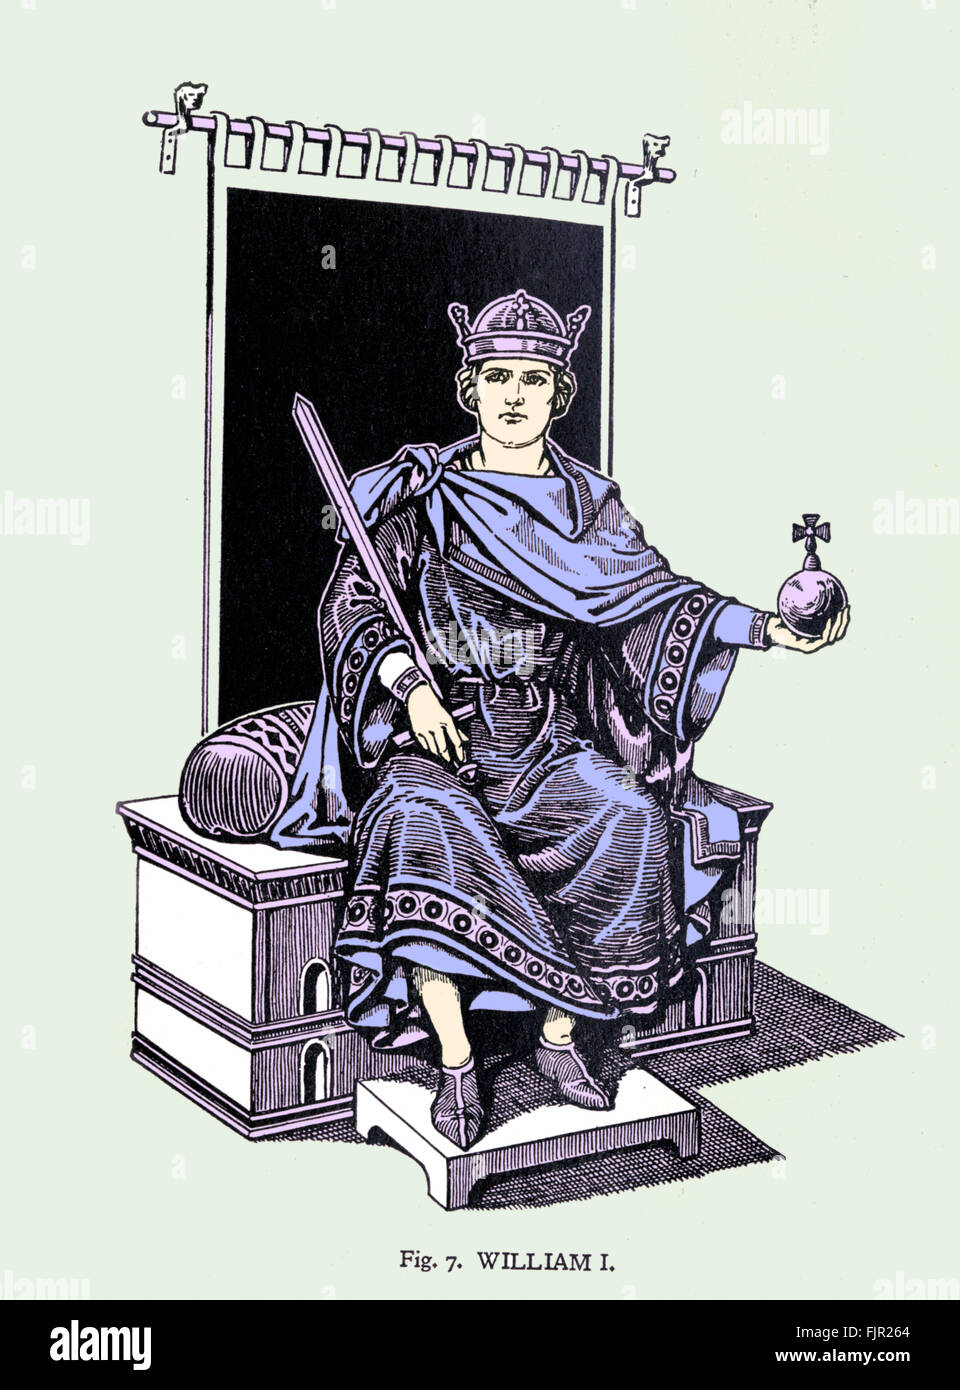 Guillaume le Conquérant (1028-1087) vêtu de la robe d'État, tenant l'orbe et l'épée royale. William J'ai conquis l'Angleterre en 1066. 1950 mort de l'artiste -peut nécessiter l'autorisation d'auteur Banque D'Images